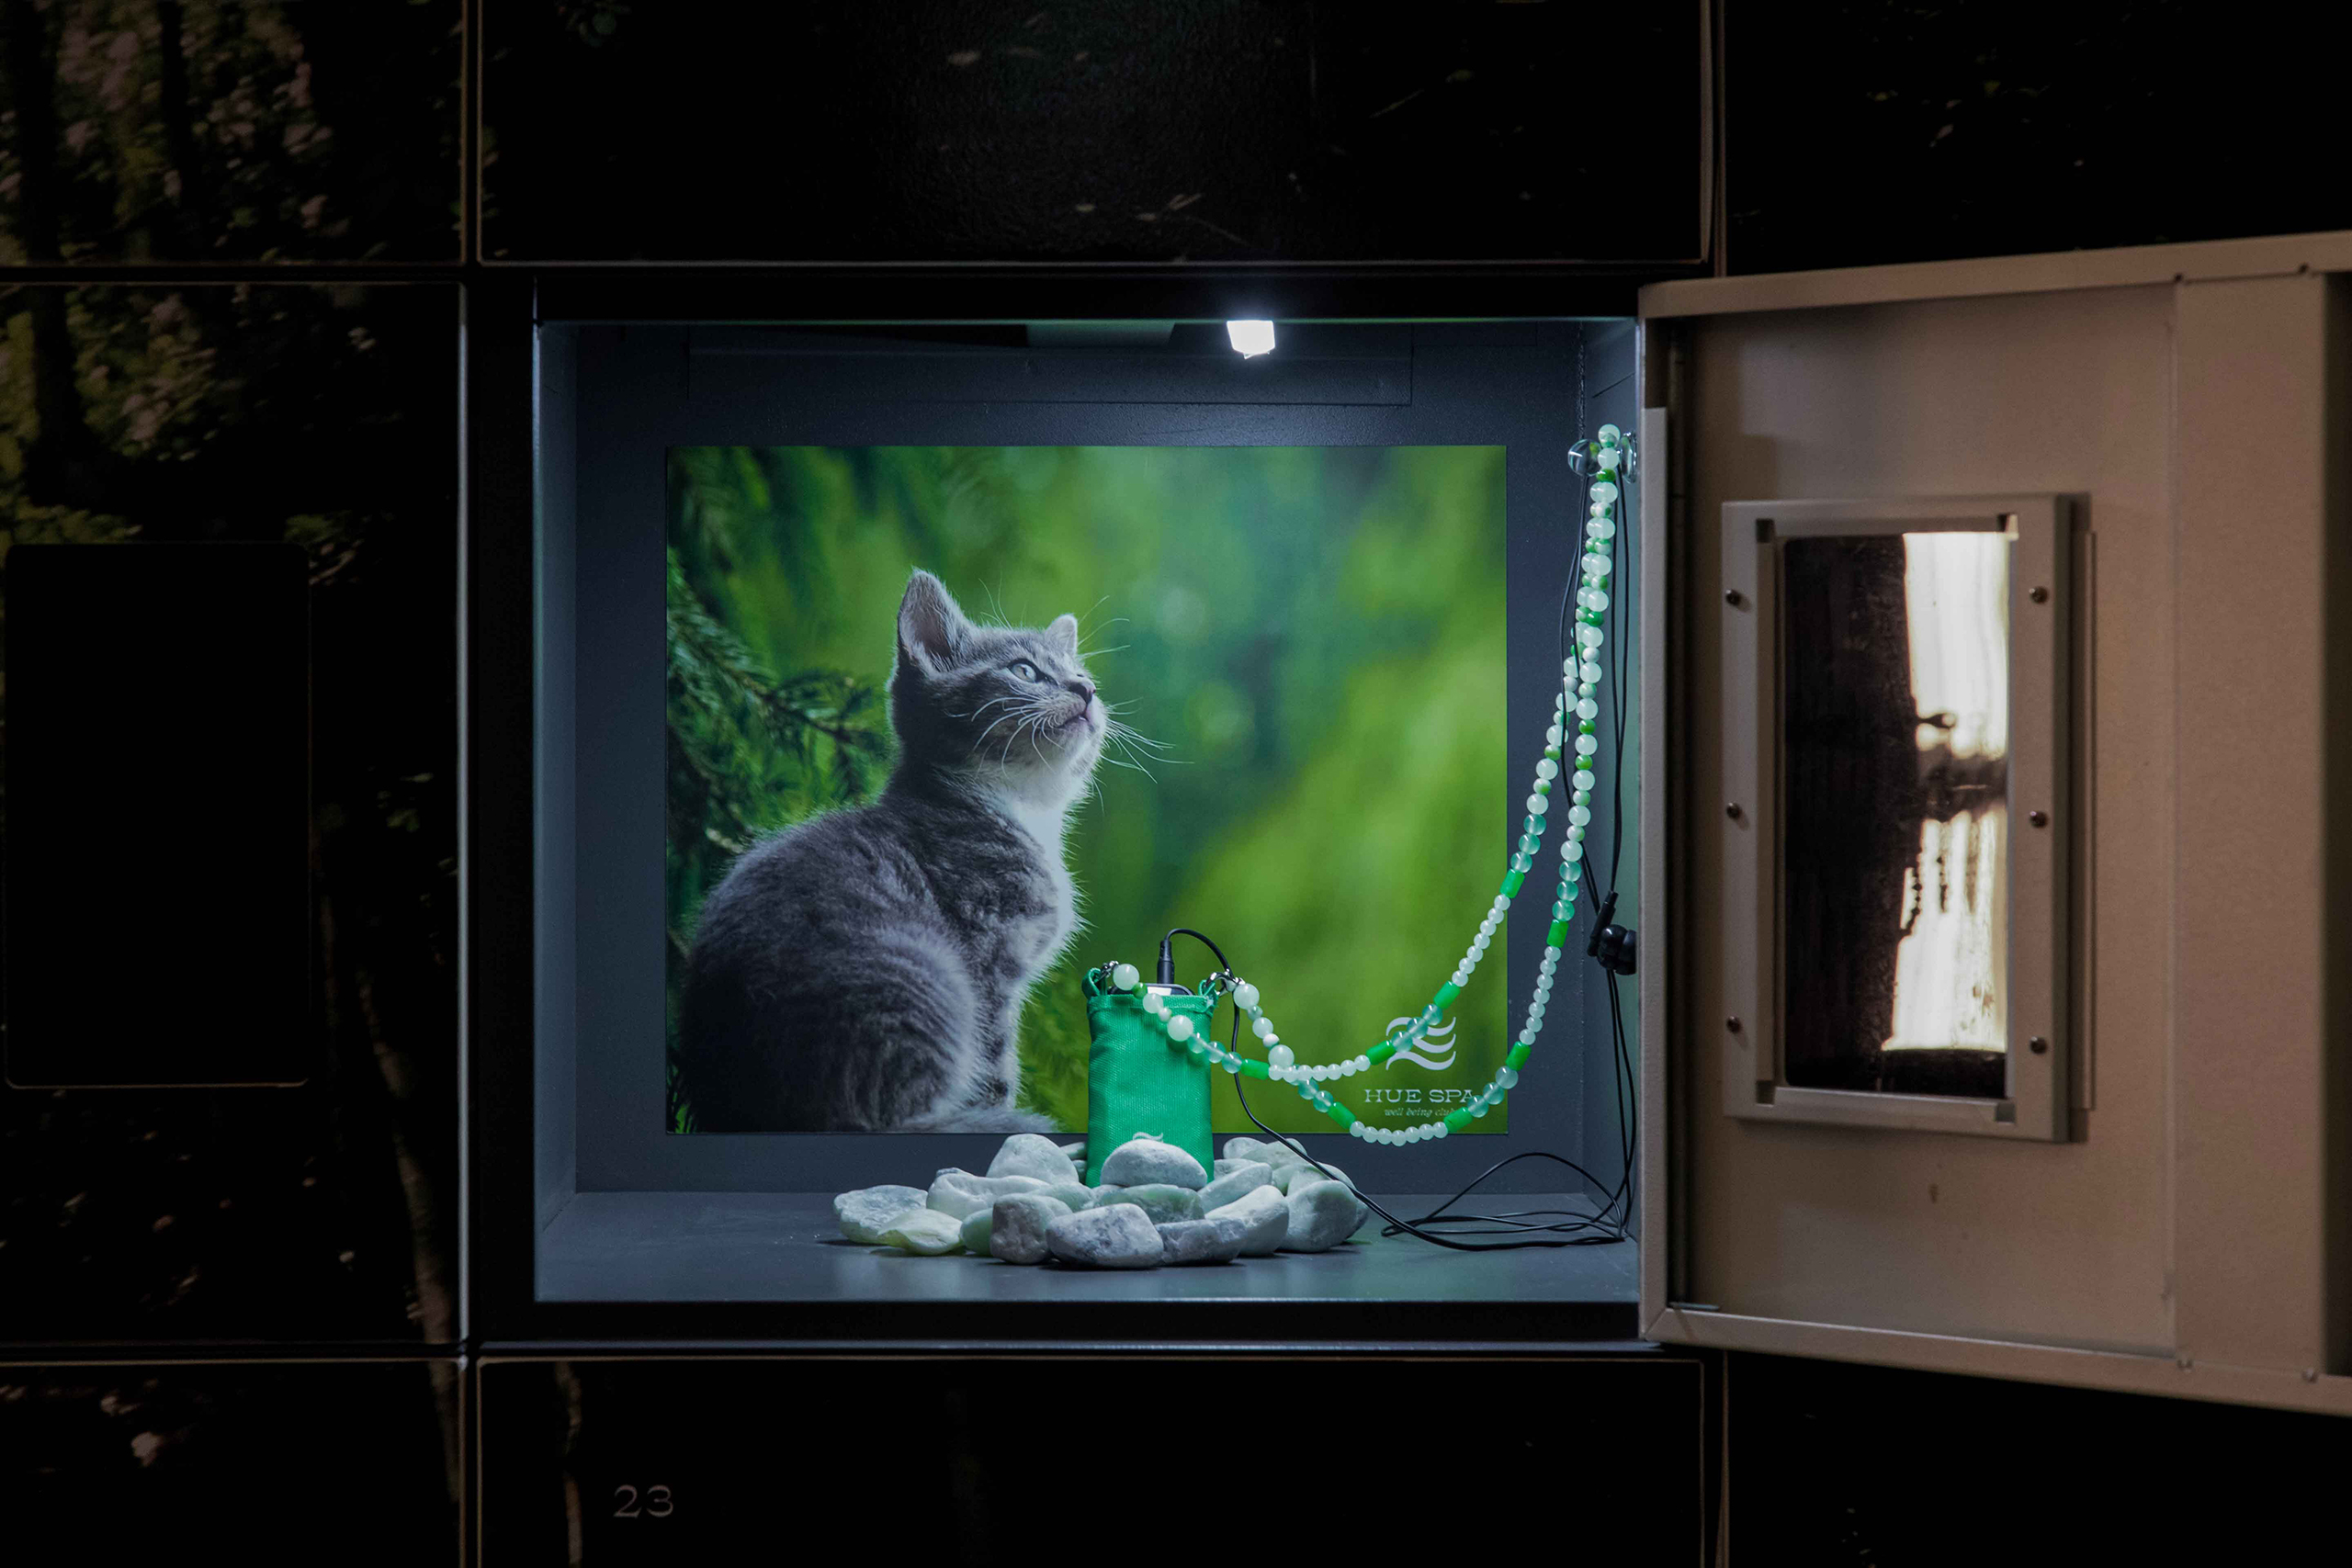 휴스파의 캐비넷 안이다. 고양이 이미지가 배경에 있고, 초록색 이용키가 놓여있다.